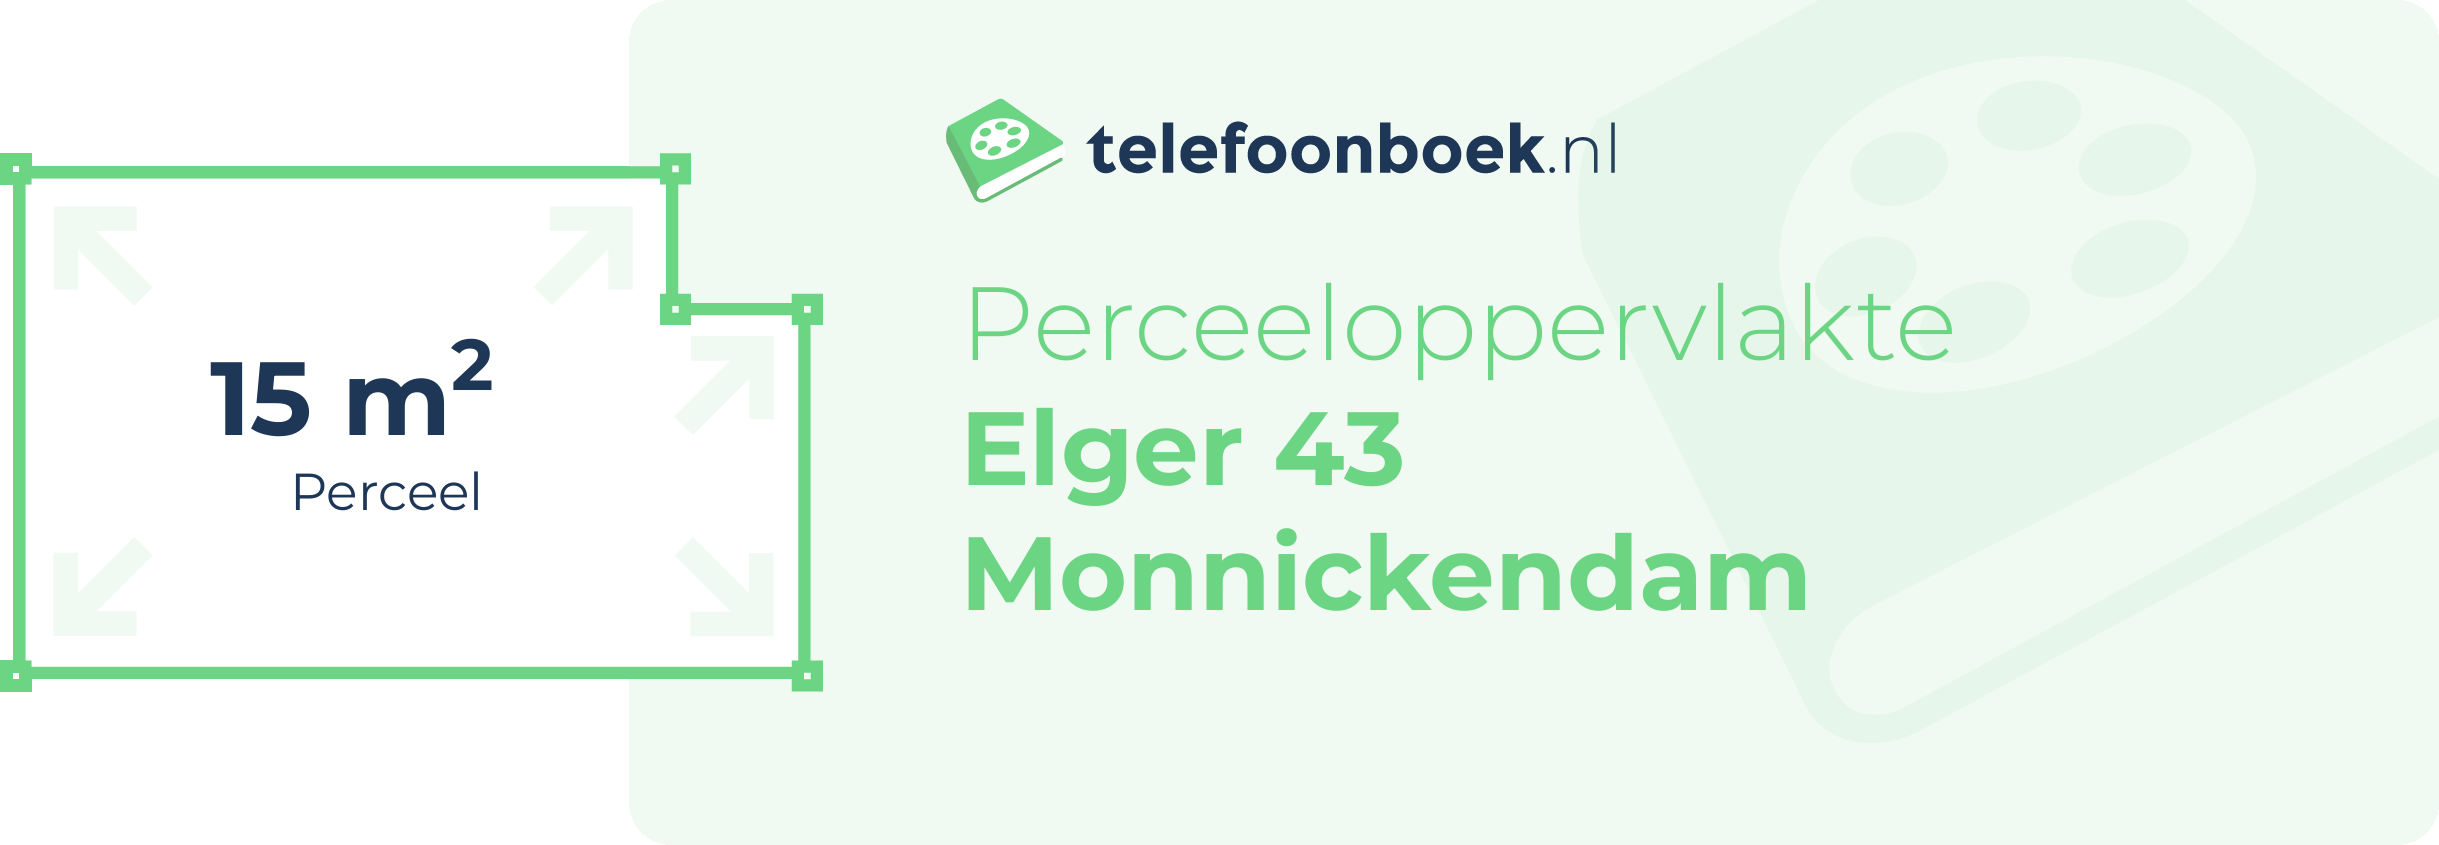 Perceeloppervlakte Elger 43 Monnickendam